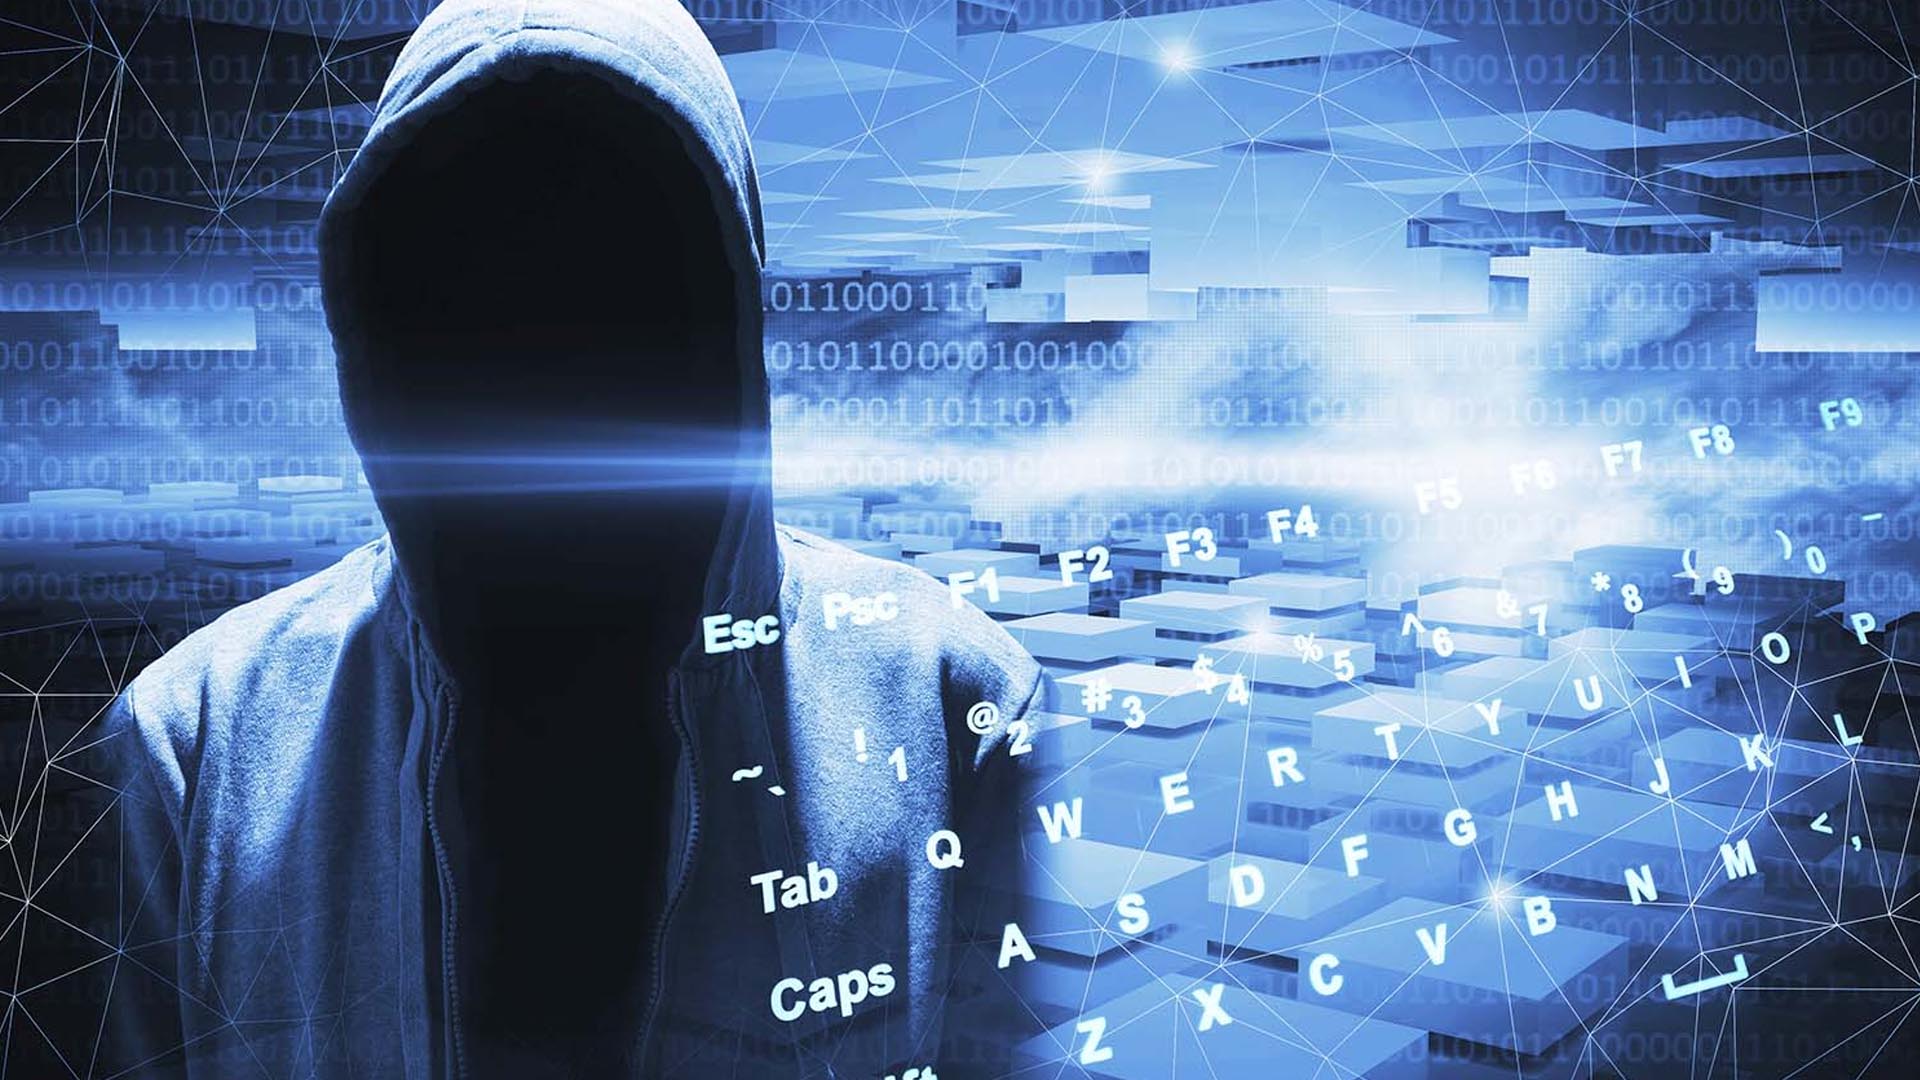 Trojan e cyber spionaggio: alcuni consigli per mettere al sicuro le comunicazioni mobili